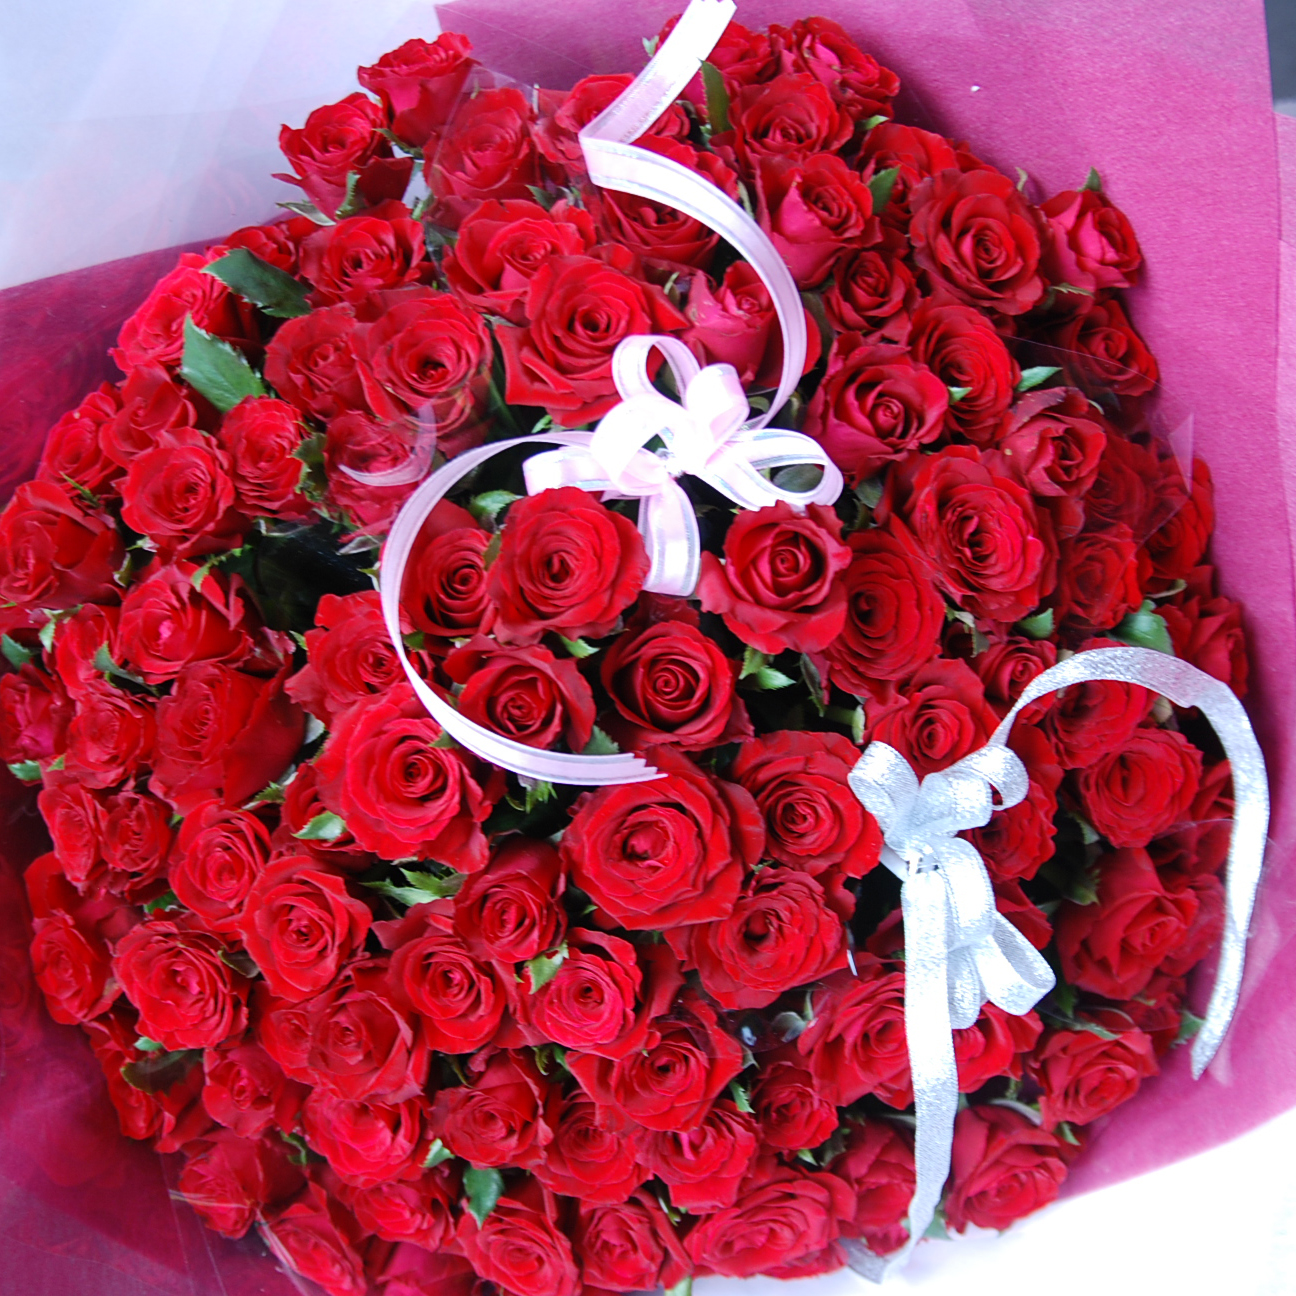 【巧繪網-FR001156 99朵紅玫瑰花束】最浪漫的情人節花禮/適合求婚情人節